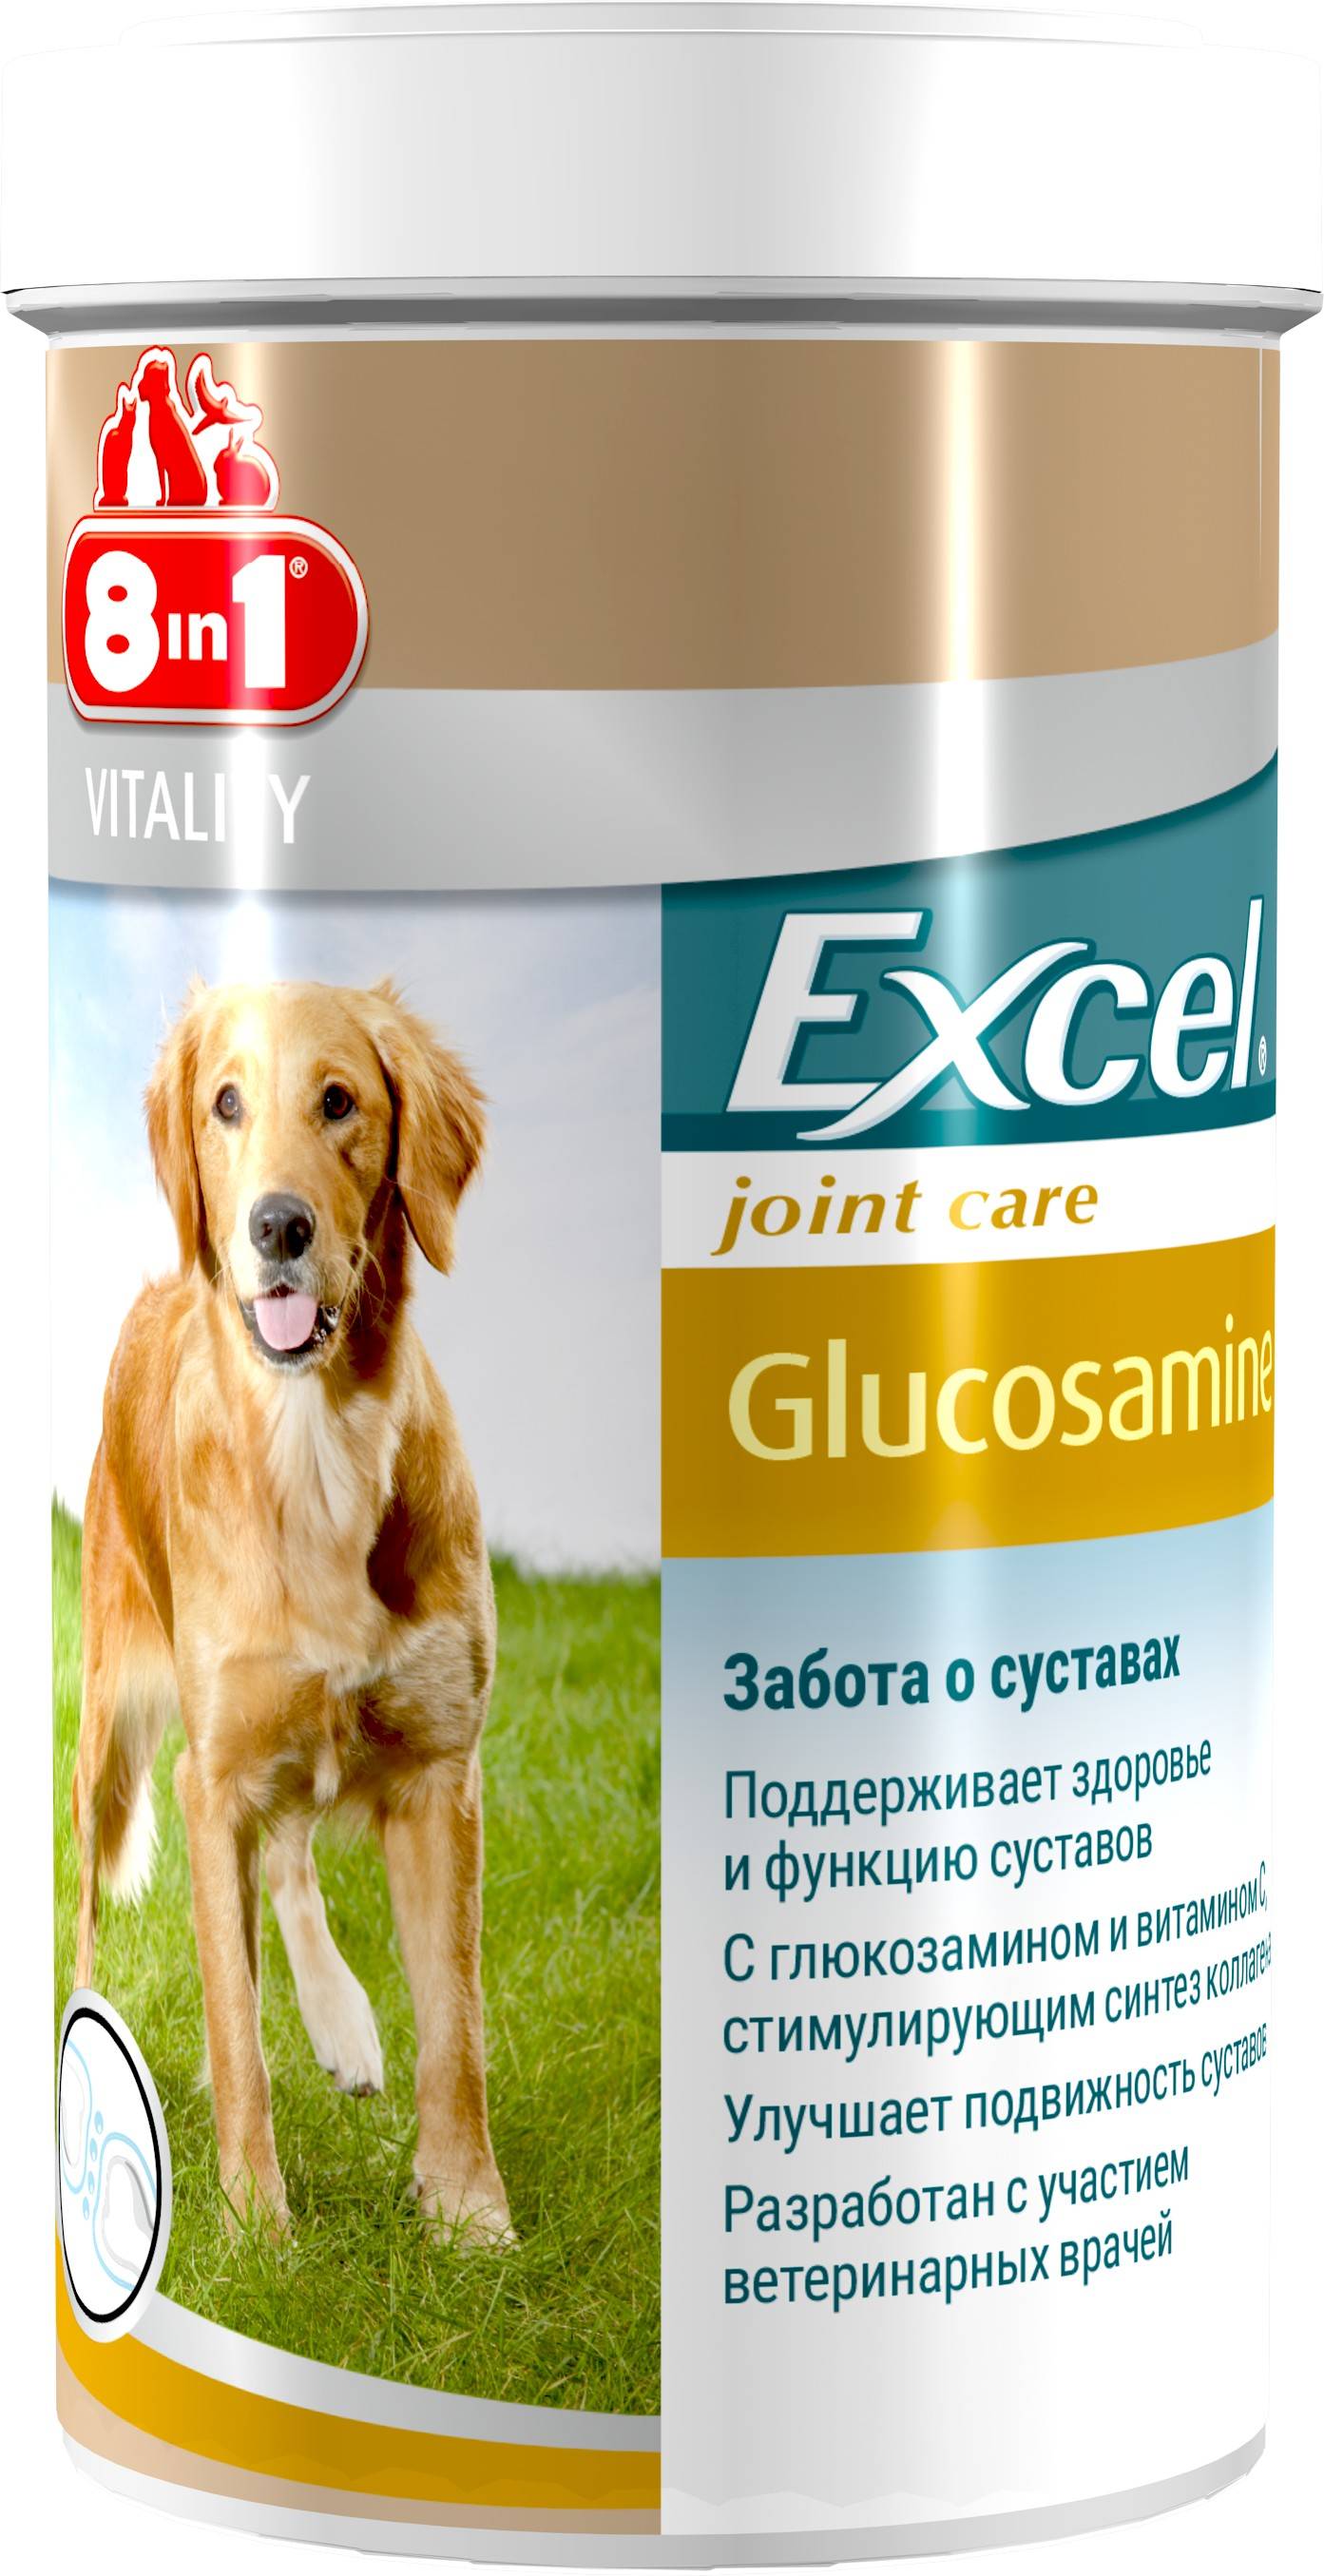 8in1 Excel Glucosamine – витаминный комплекс для поддержания здоровья и подвижности суставов взрослых собак